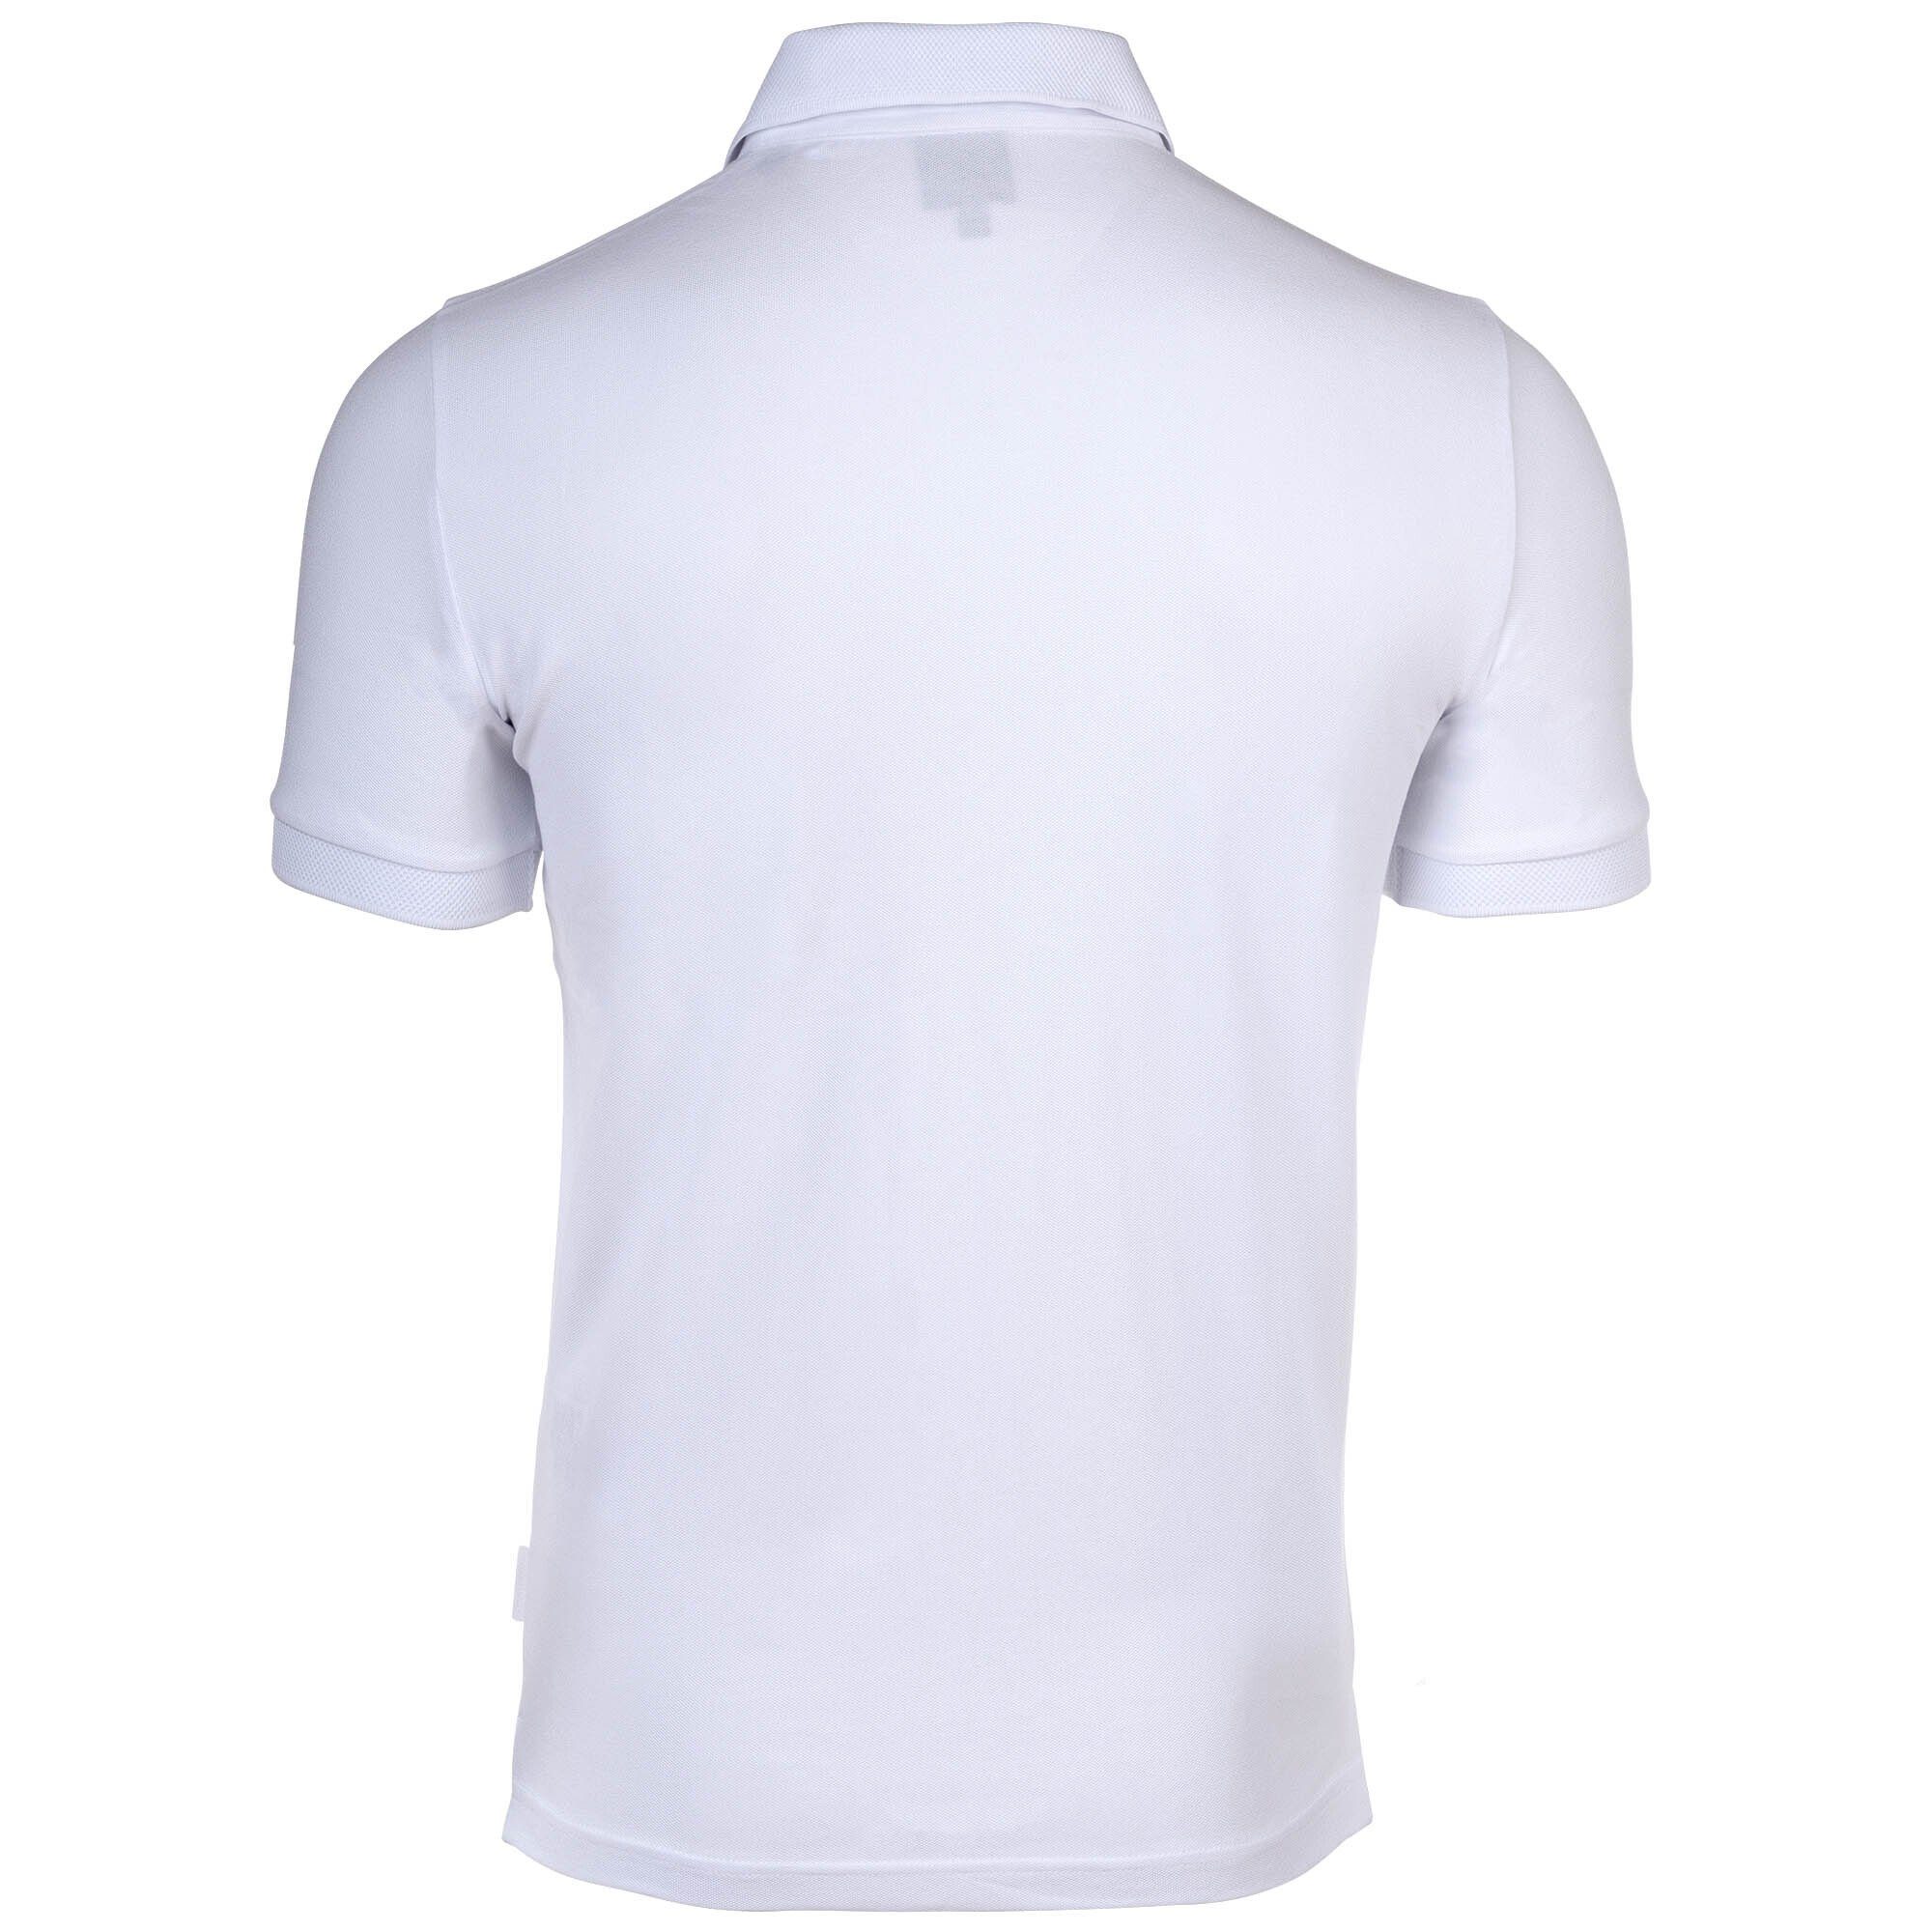 Poloshirt Weiß ARMANI - Slim Poloshirt Herren einfarbig, Cotton fit, EXCHANGE